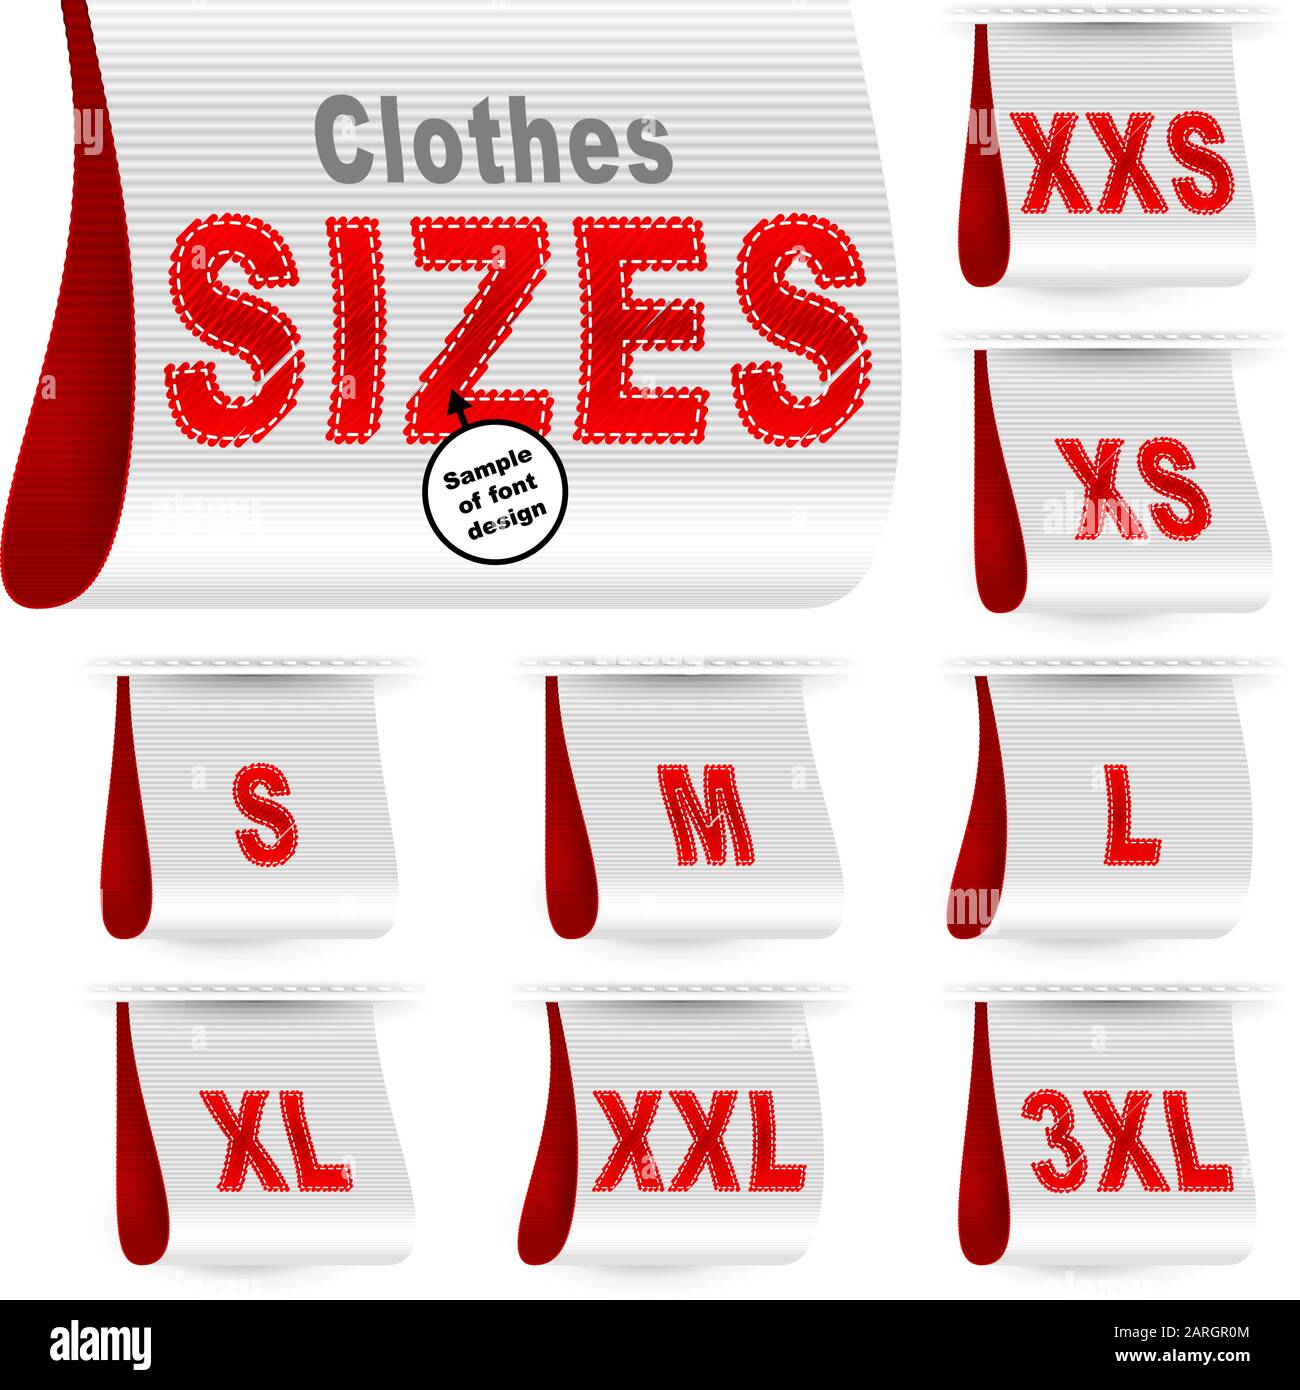 Size M,L,XL,XXL